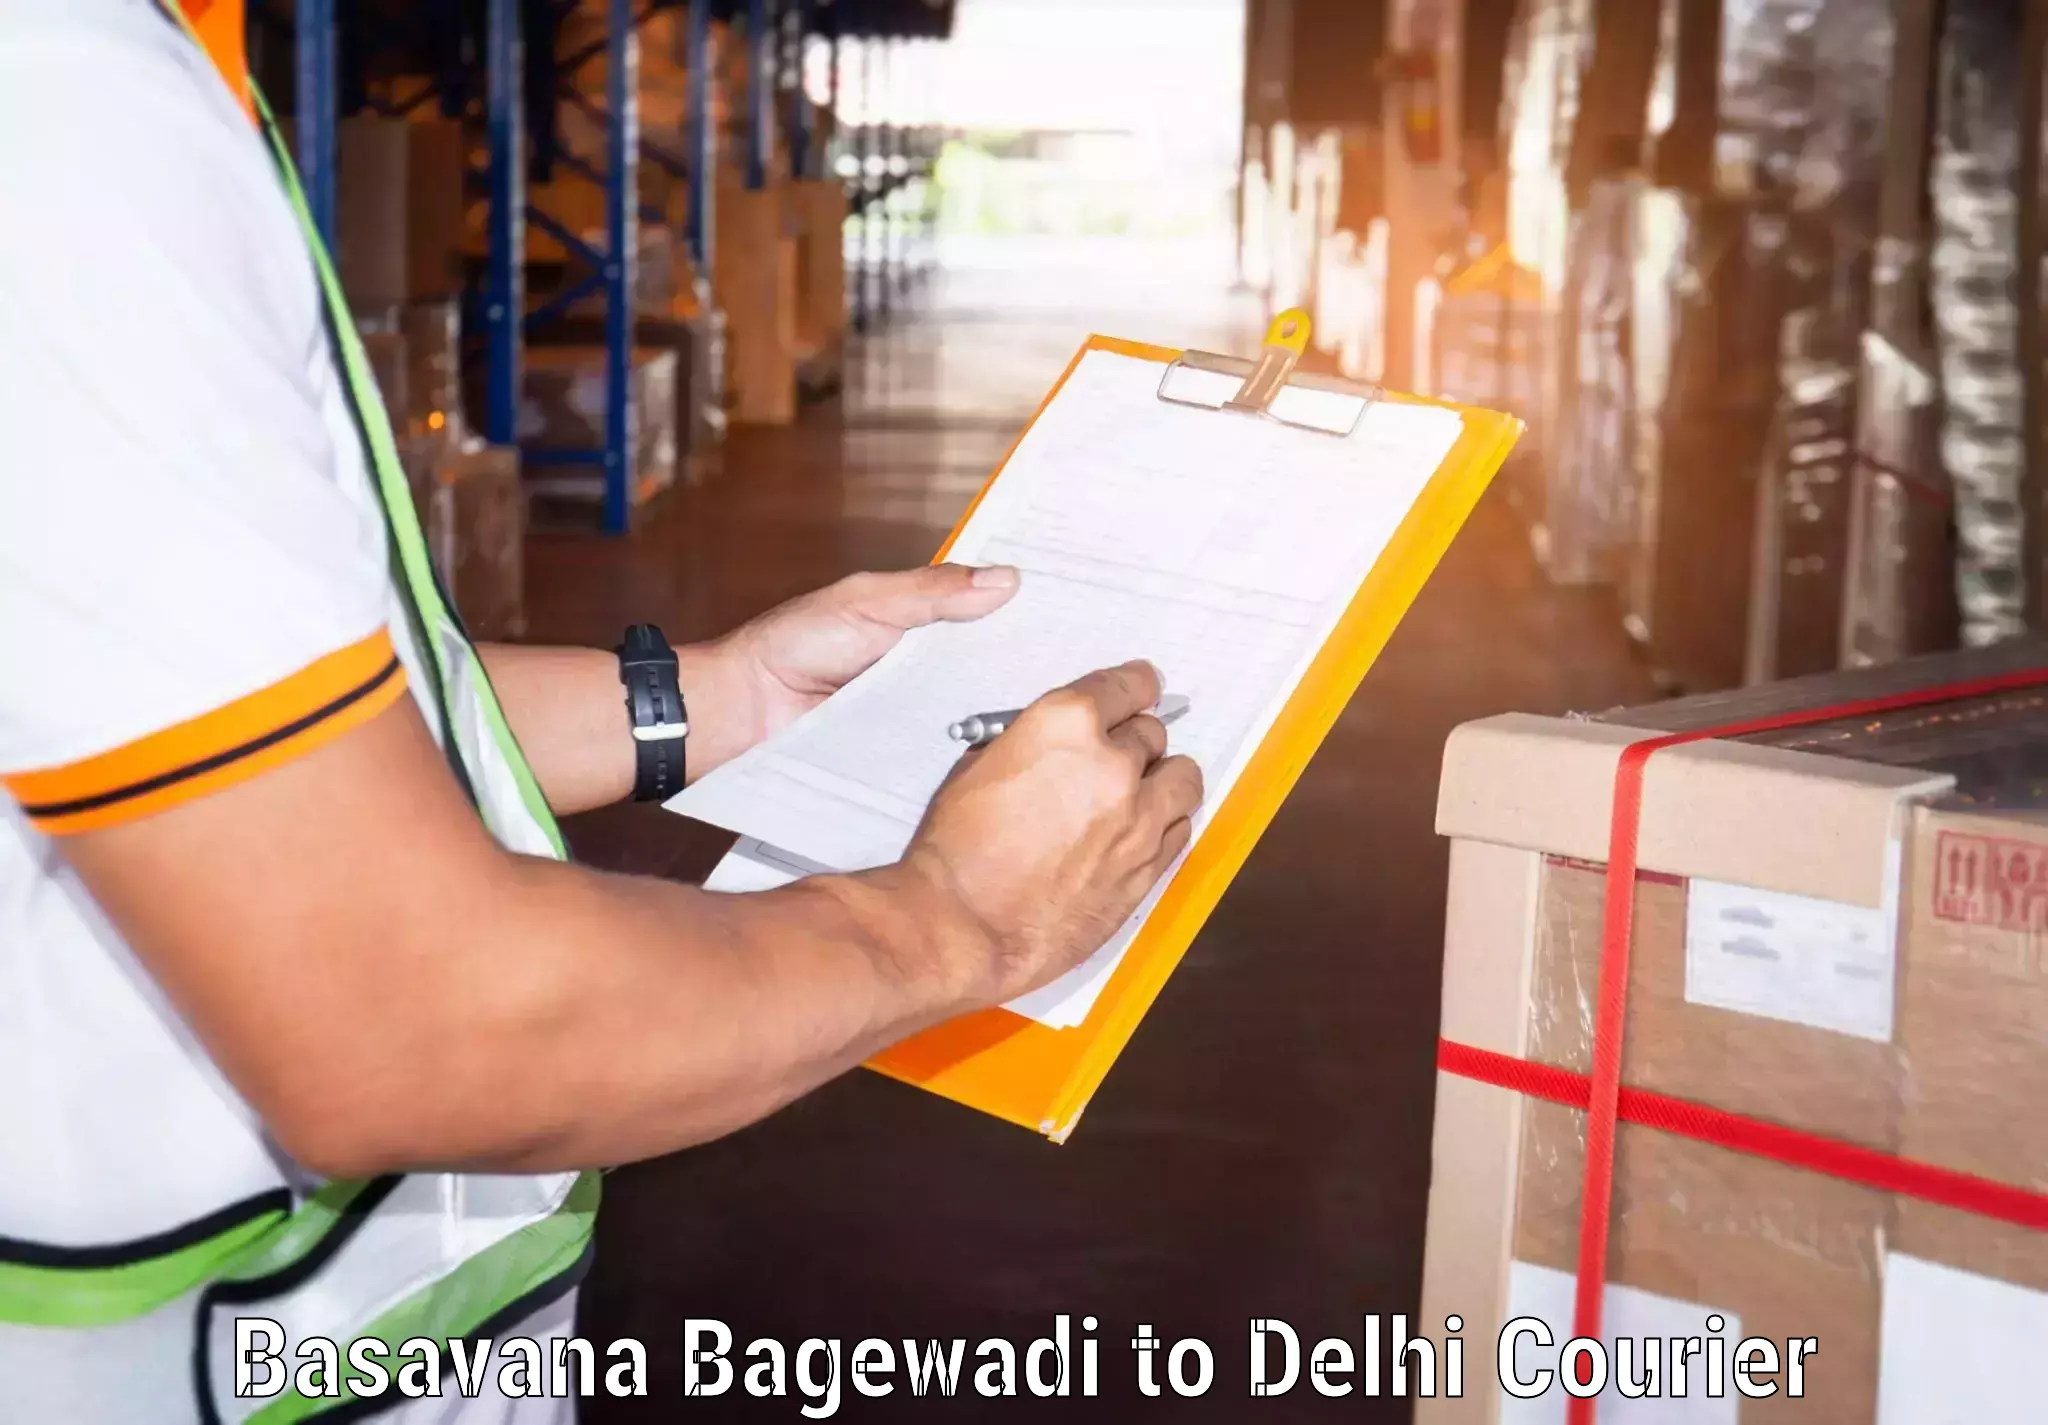 Doorstep delivery service Basavana Bagewadi to East Delhi